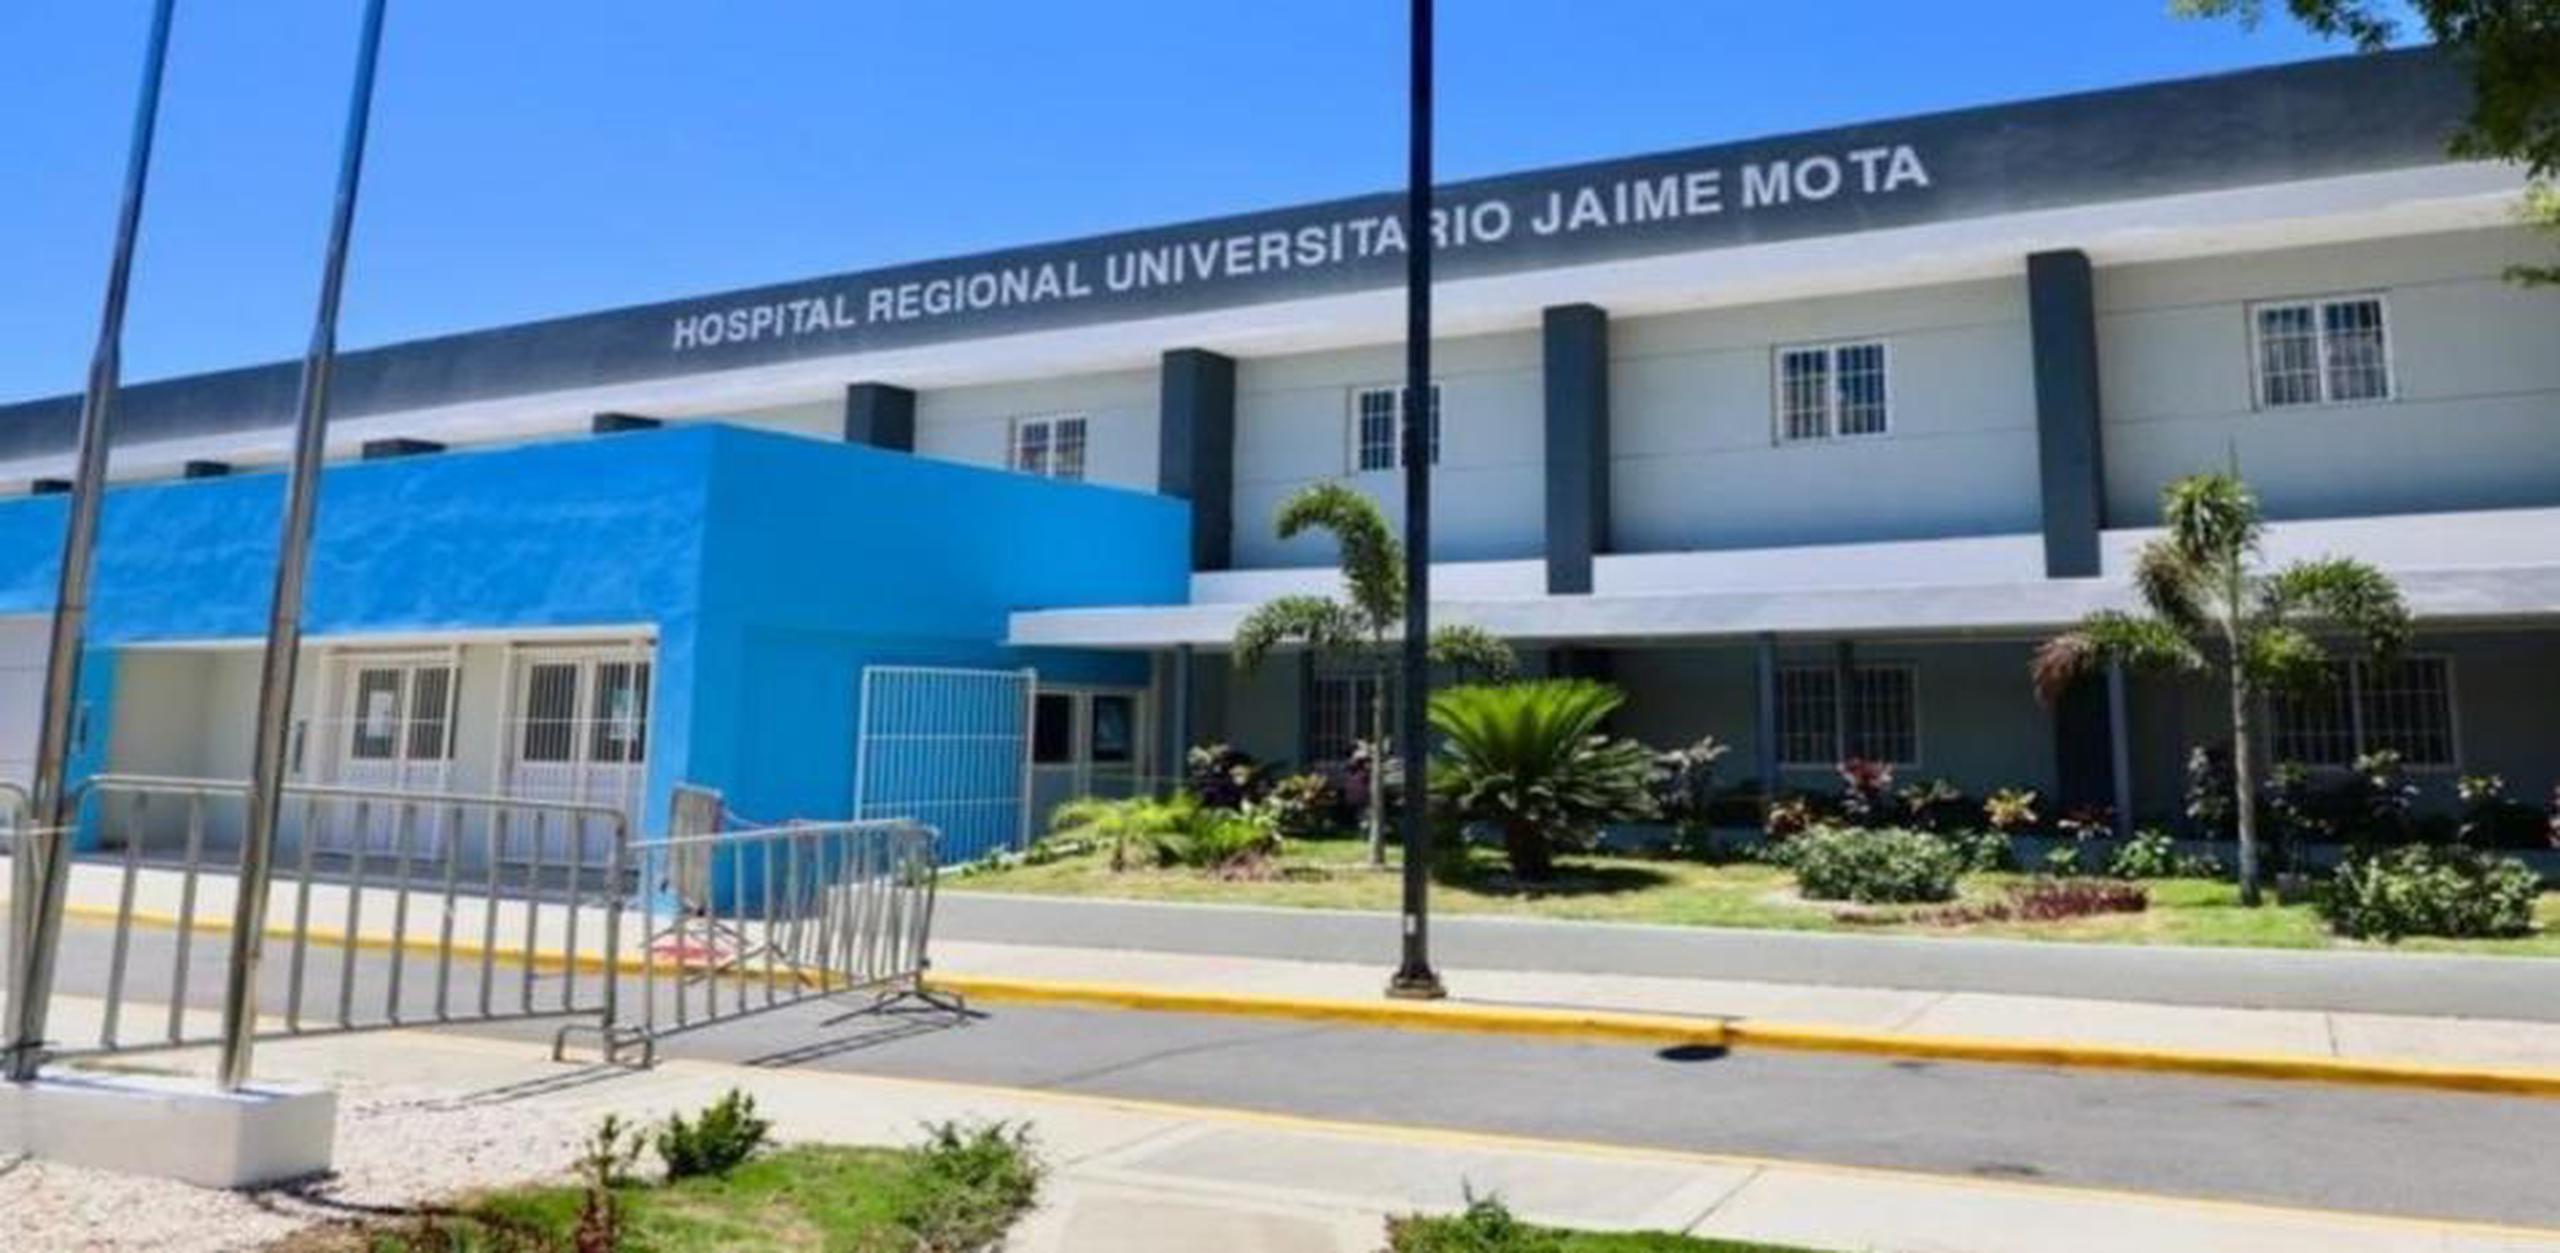 Estas nuevas defunciones se suman a más de diez ocurridas en los últimos 20 días en este municipio, además, hay otros pacientes con los mismos síntomas ingresados en el Hospital Regional Docente Universitario Jaime Mota.